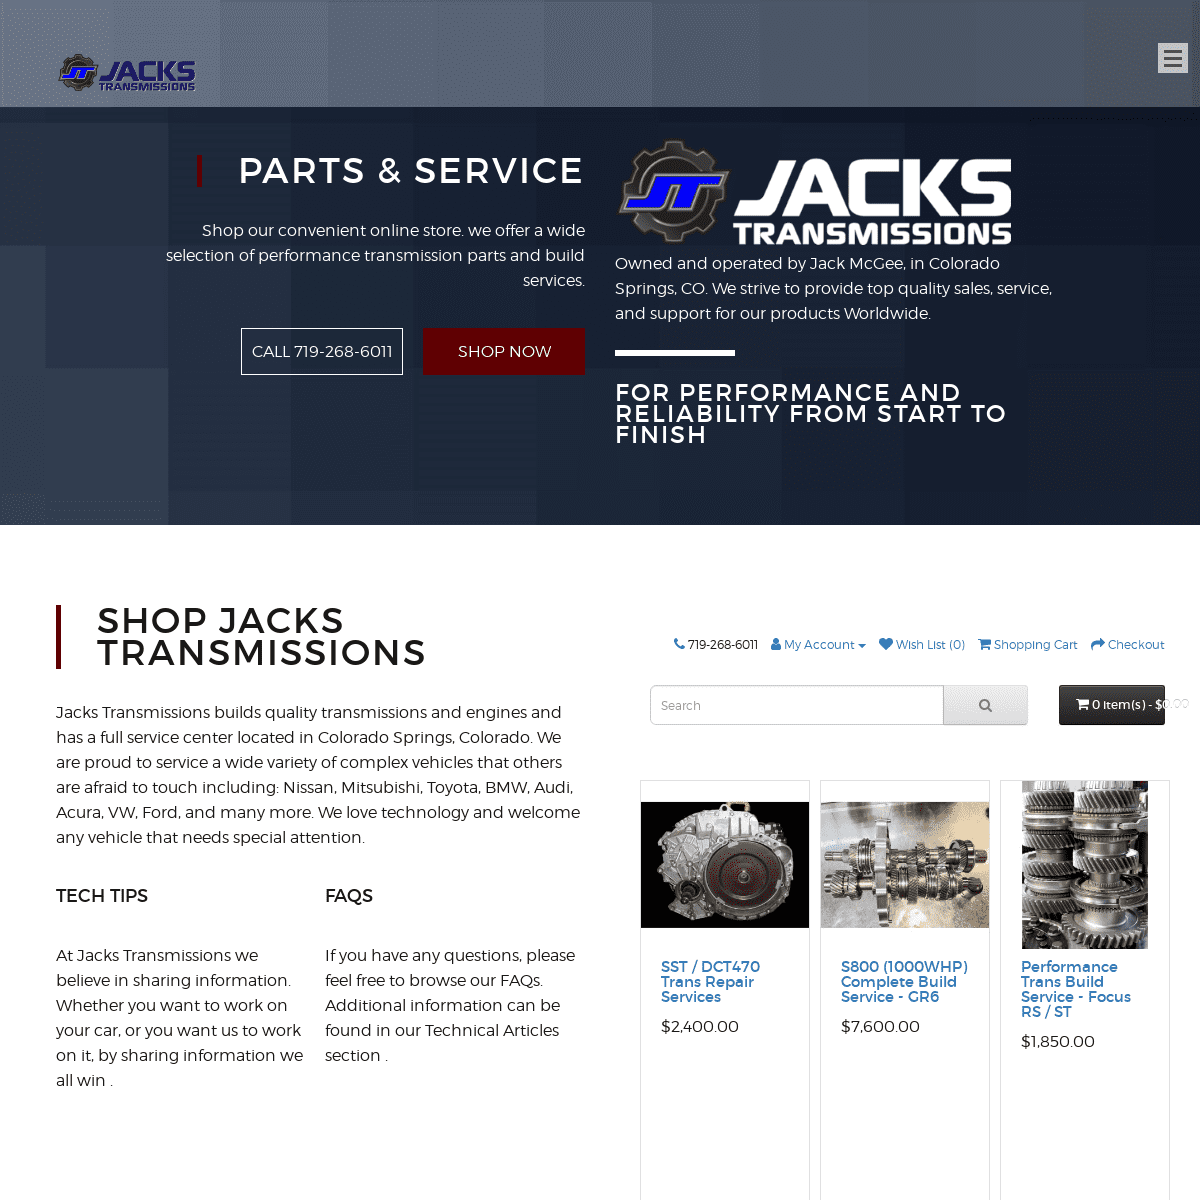 A complete backup of jackstransmissions.com